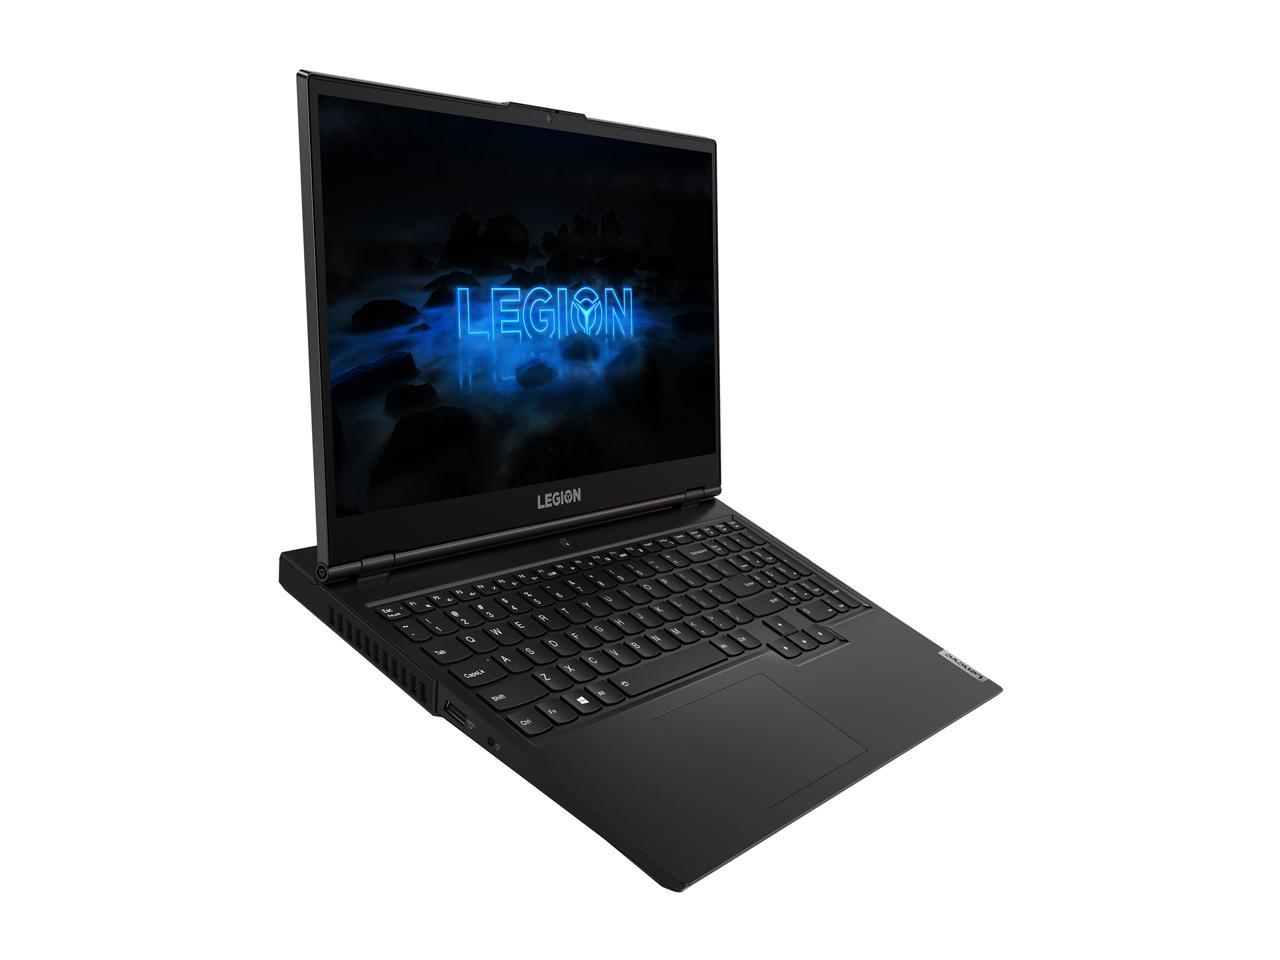 Lenovo Legion 5 - 15.6" - Intel Core i7-10750H - GeForce GTX 1650 - 8 GB DDR4 - 256 GB SSD - Windows 10 Home - Gaming Laptop (82AU0013US)